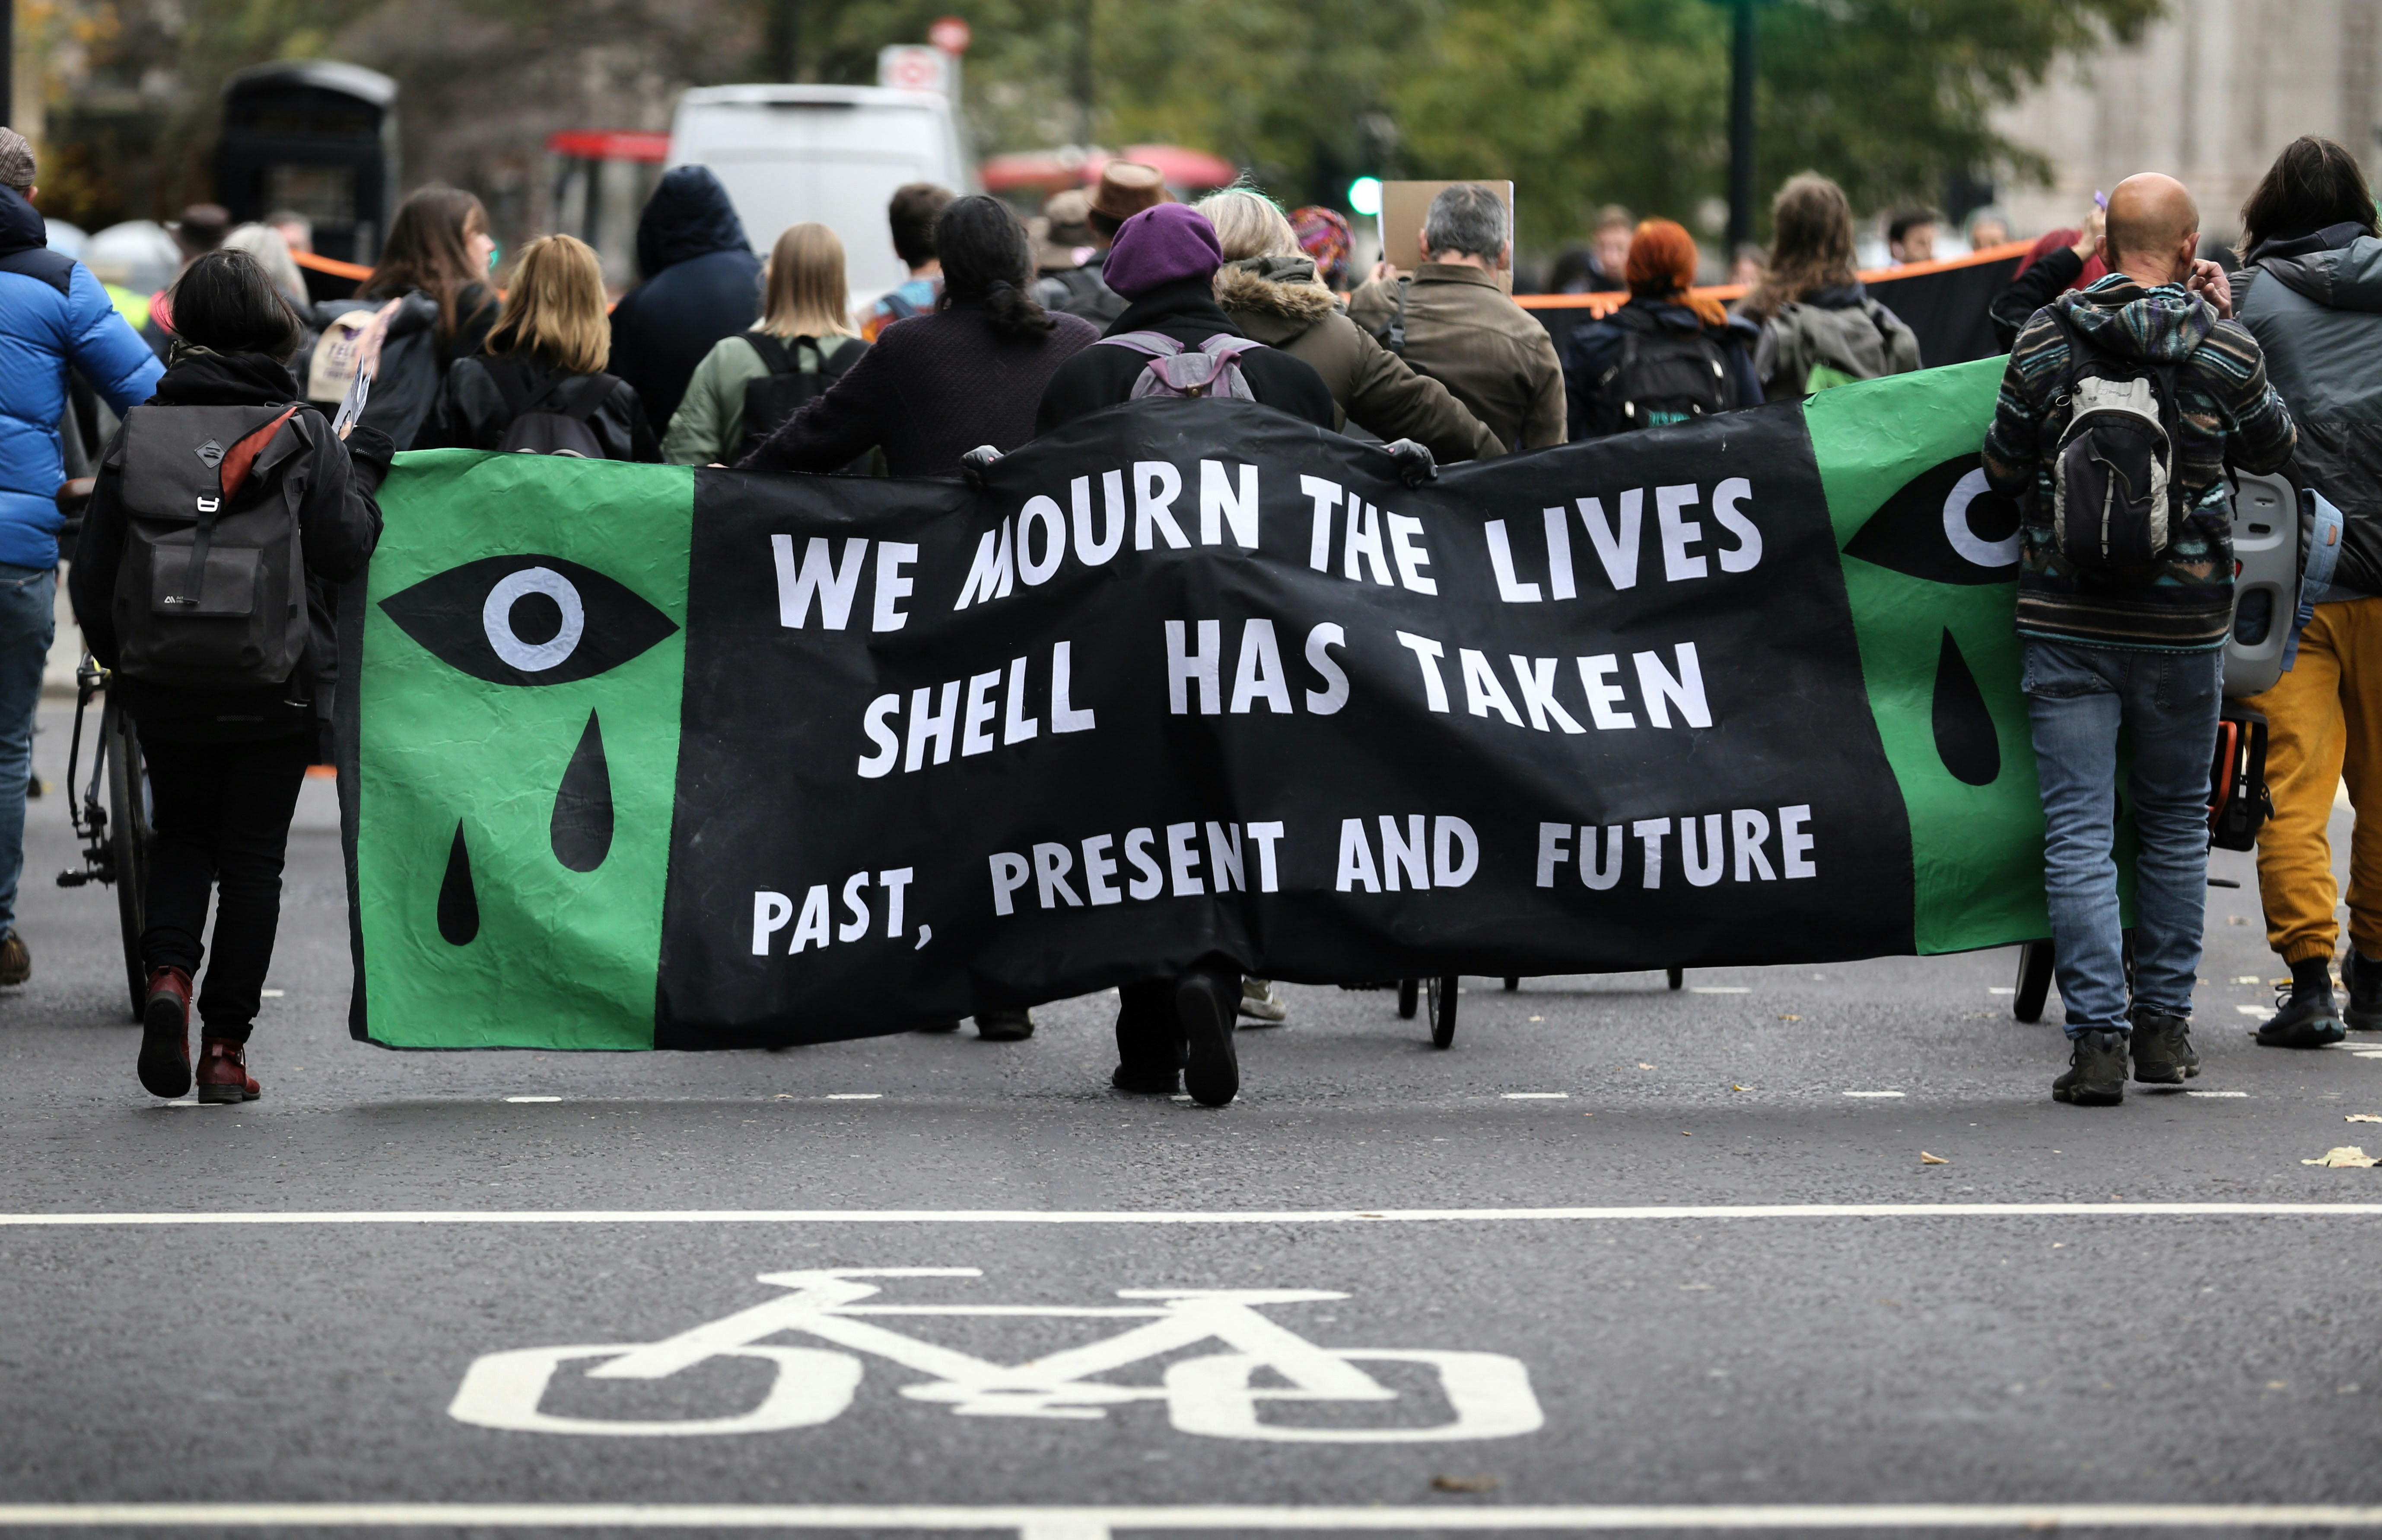 ЛОНДОН, АНГЛИЯ – 10 НОЕМВРИ: Протестиращите се събират зад транспарант против Shell, докато маршируват през Лондонското сити на 10 ноември 2022 г. в Лондон, Англия.  Това е 27-ата годишнина от екзекуцията на Ogoni 9, включително Ken Saro-Wiwa, в Нигерия за противопоставяне на Shell и техния бизнес с изкопаеми горива в делтата на Нигер.  Extinction Rebellion изправя Vanguard на съд, тъй като протестиращите смятат, че инвестирането им в компании за изкопаеми горива е неетично.  (Снимка от Мартин Поуп/Гети изображения)